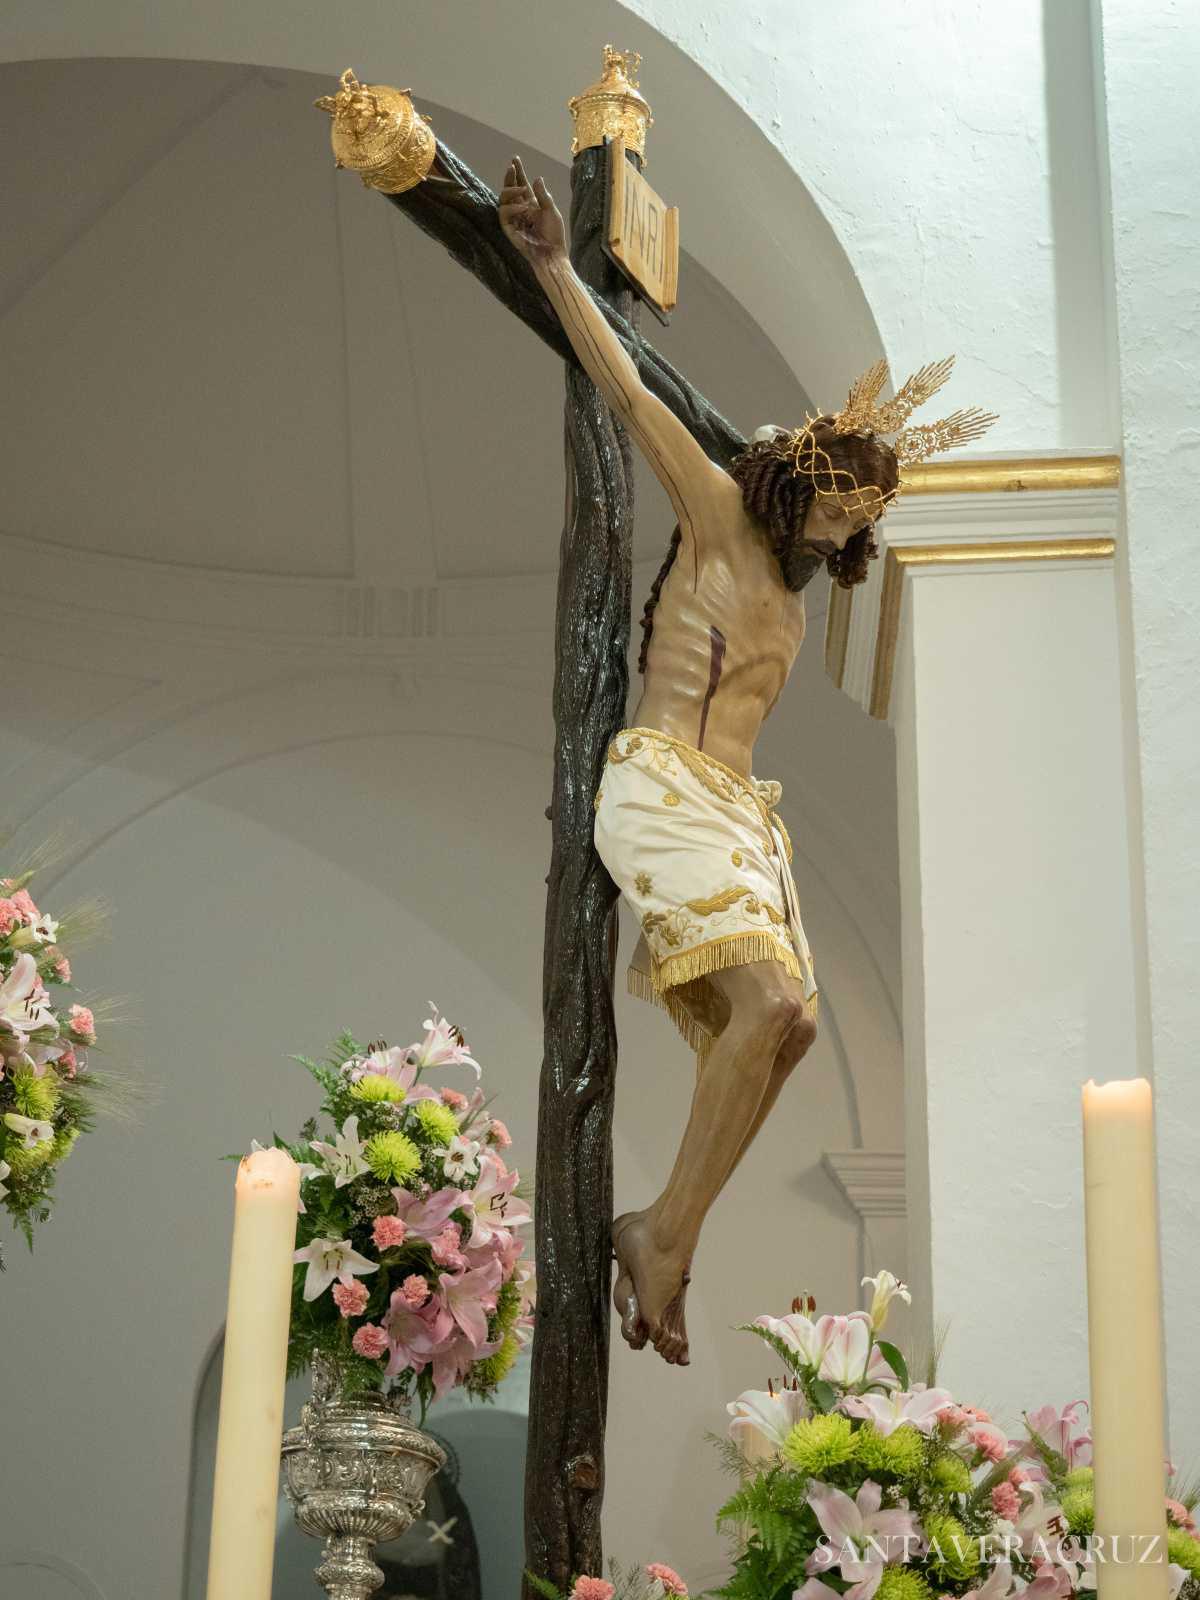 Triduo en honor del Santísimo. Cristo de la Vera+Cruz: "Yo he venido al mundo como luz".